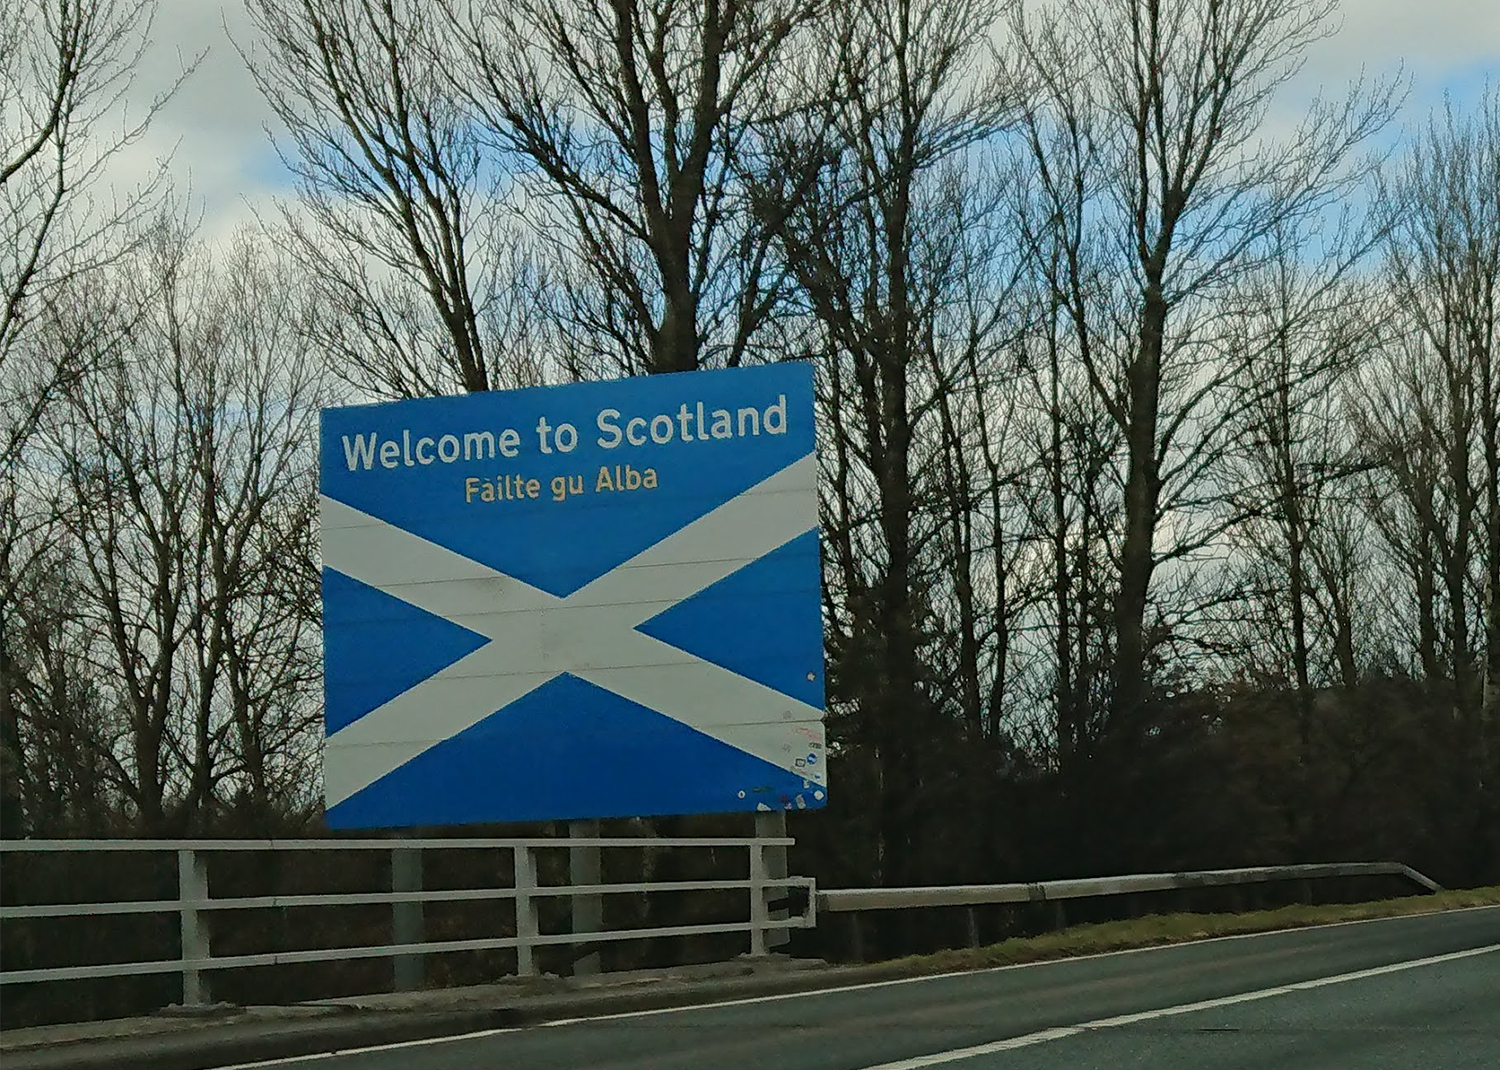 Entering Scotland